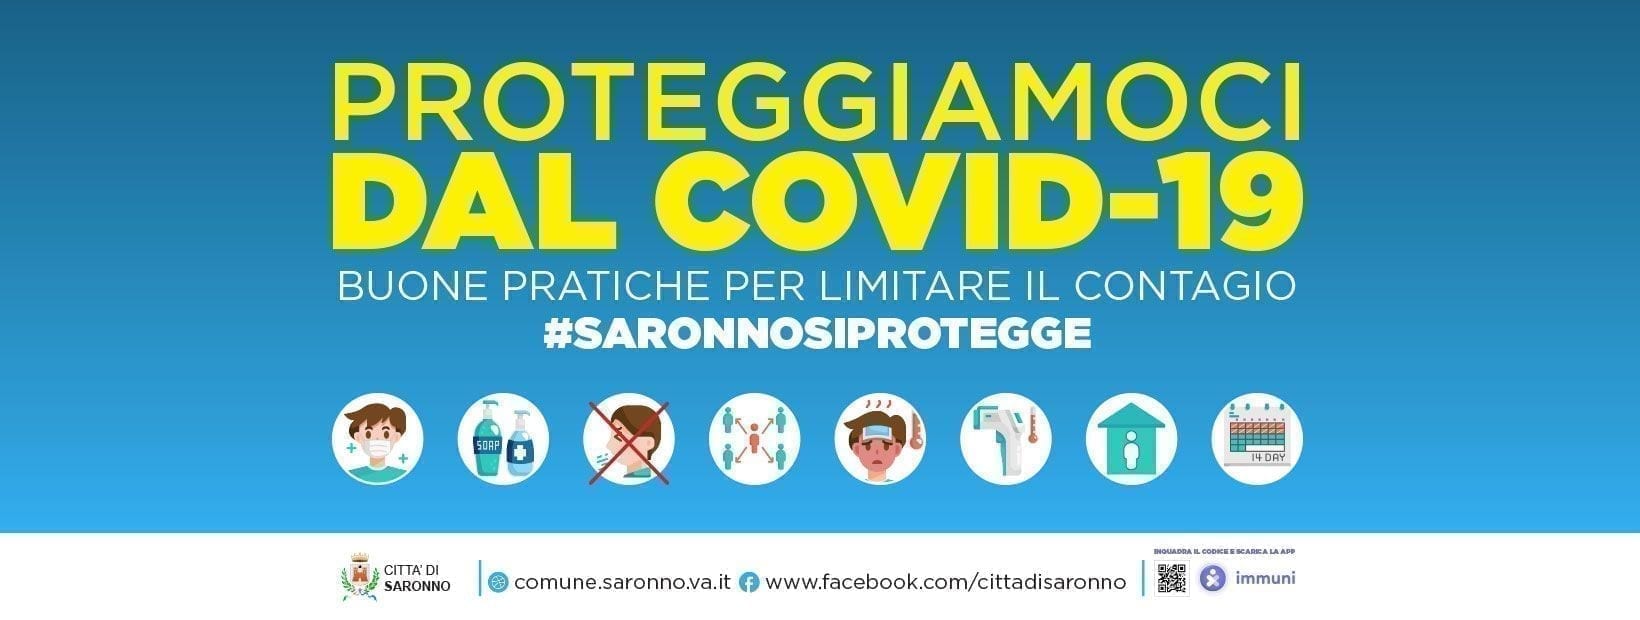 Anche ilSaronno aderisce alla campagna #saronnosiprotegge